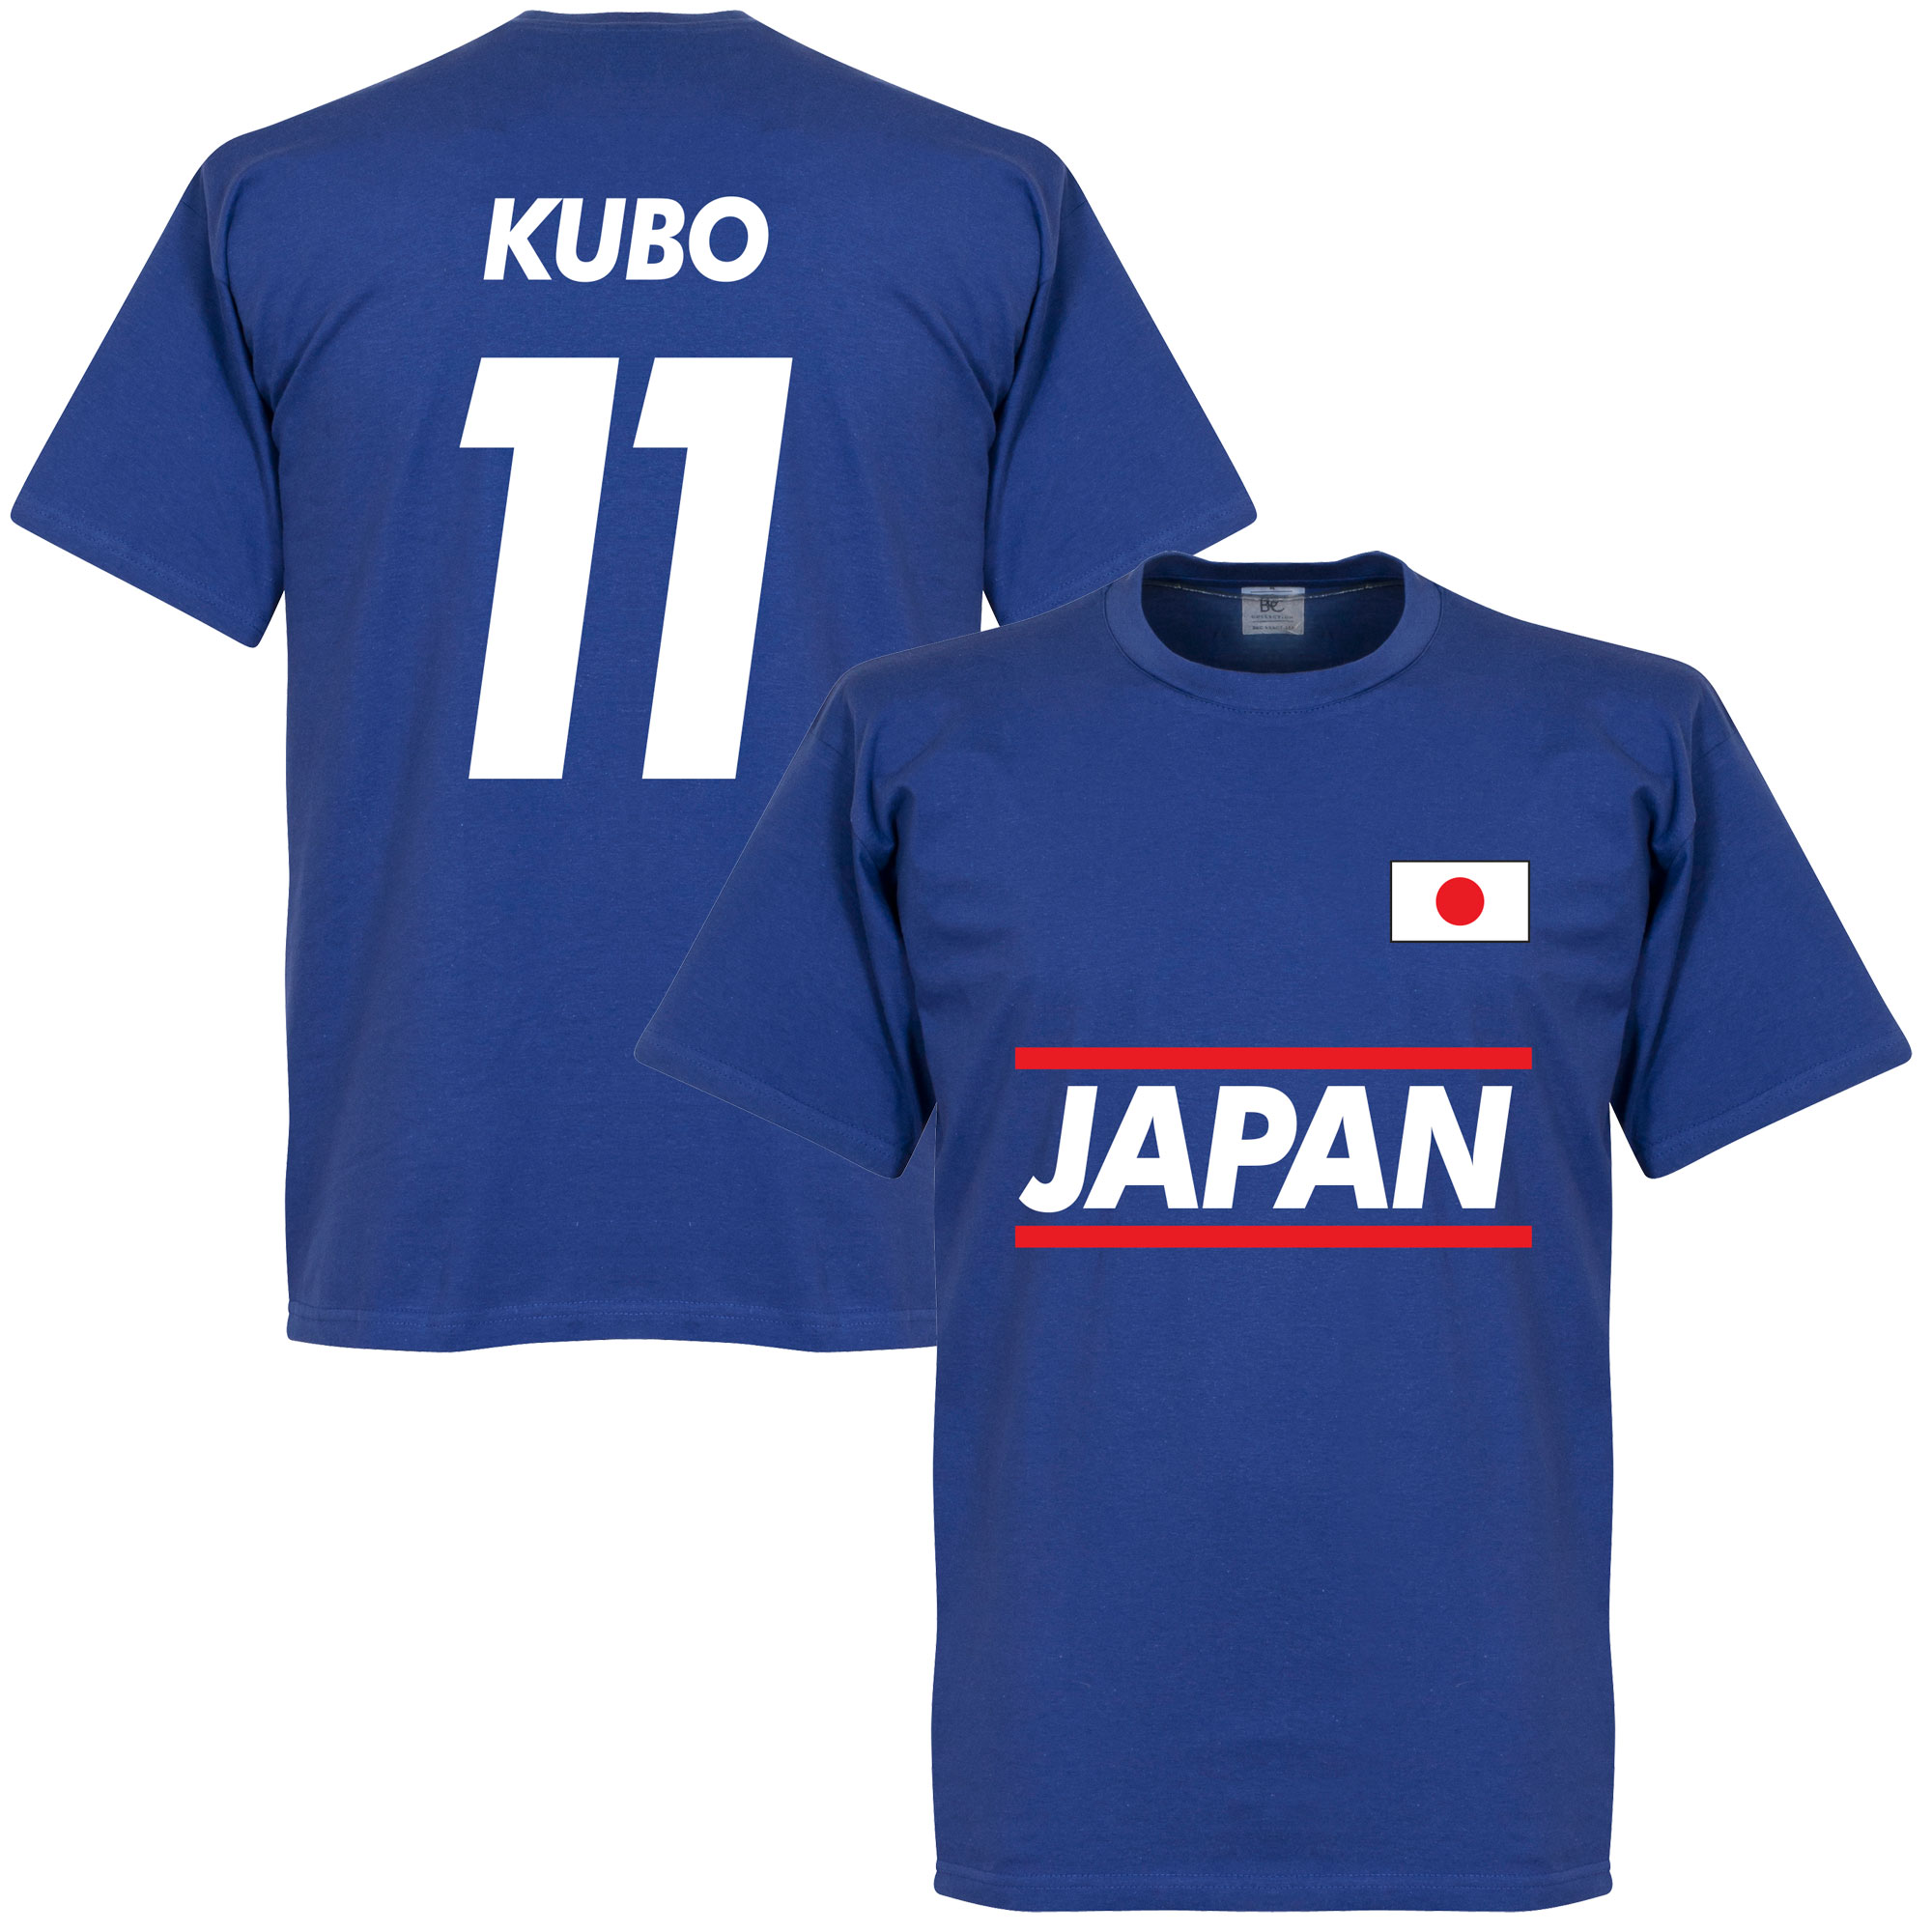 Japan Kubo 11 Team T-Shirt - XL